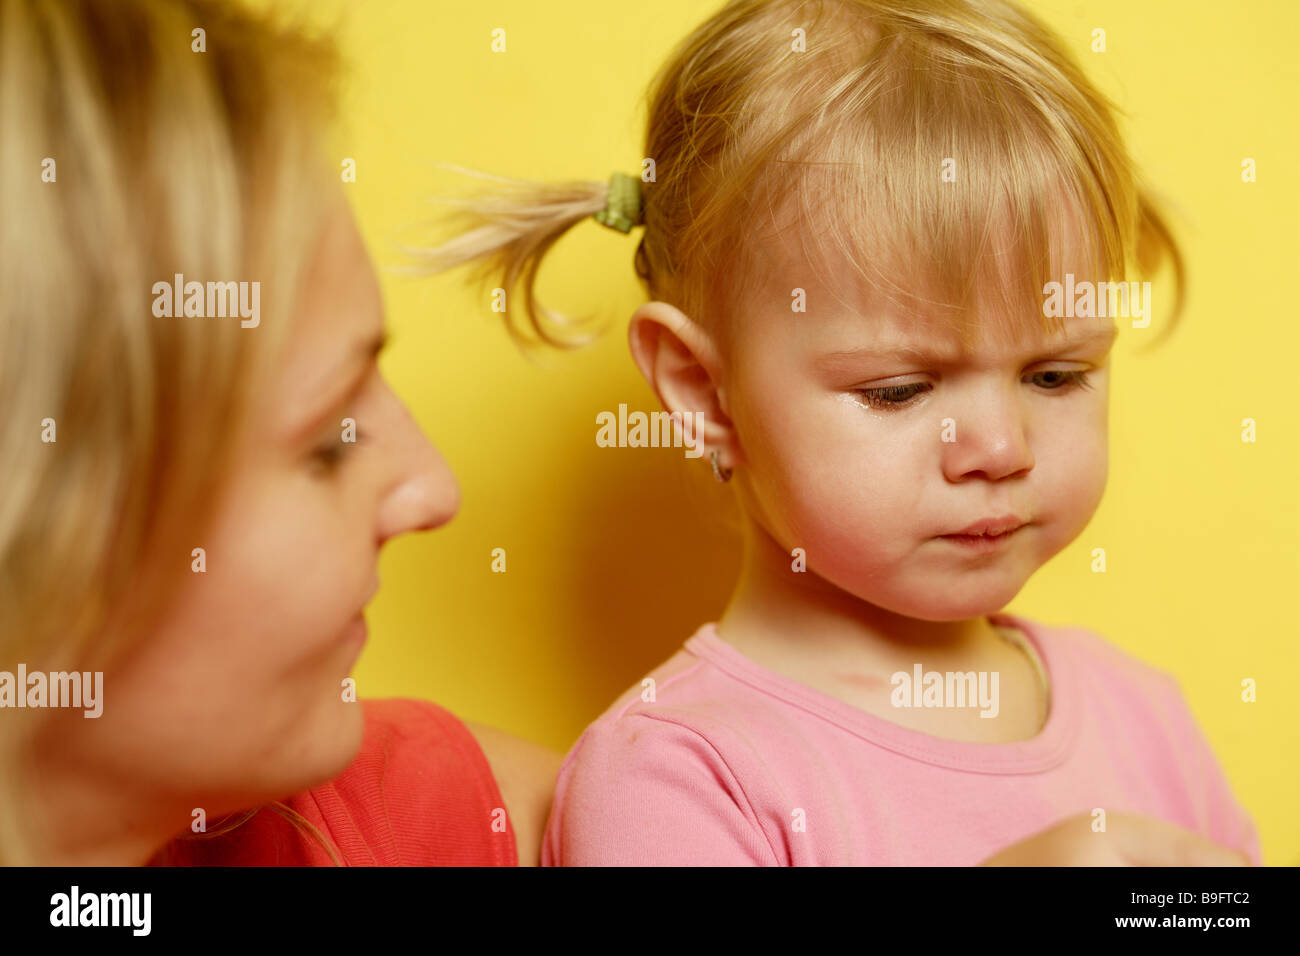 Cris de fille mère portrait série confort abordé personnes femme enfant fille mécontent insatisfait de l'expression faciale defiance Banque D'Images